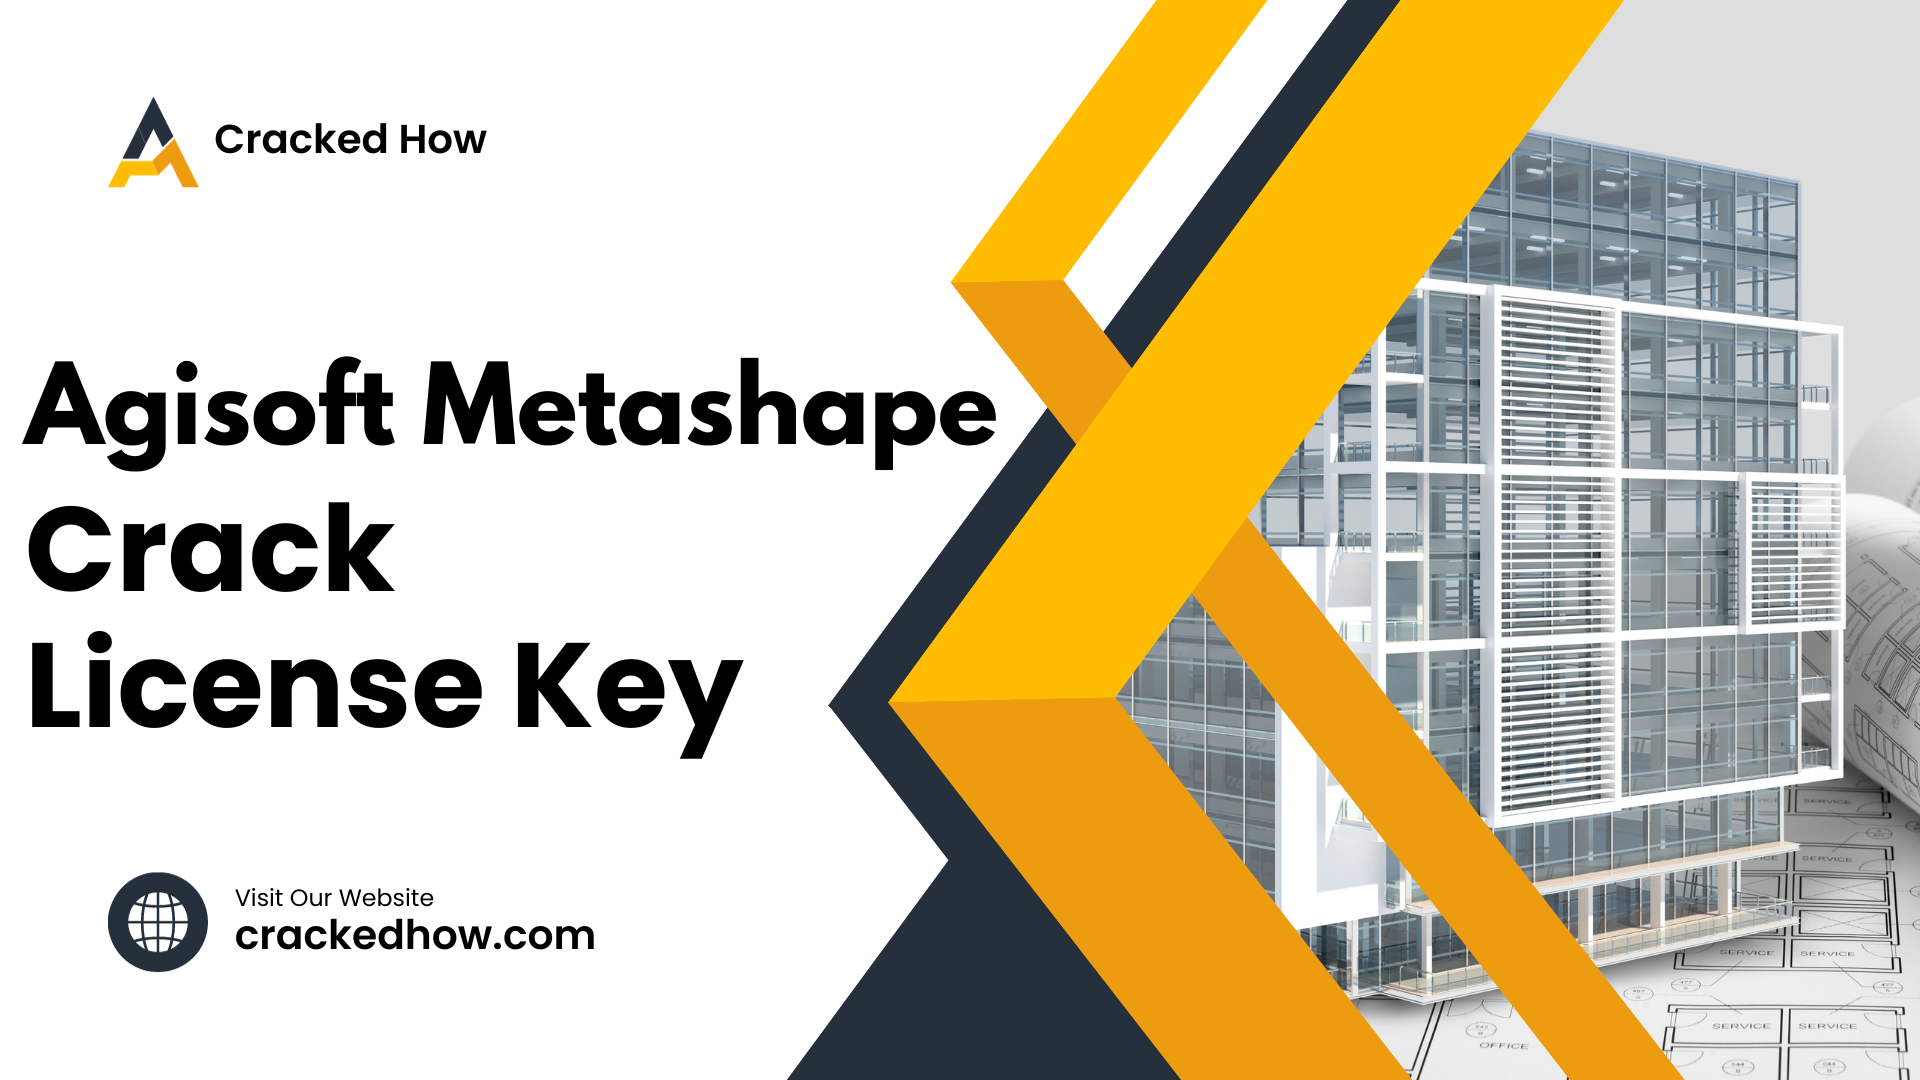 Agisoft Metashape Professional 2.2.1 Crack with License Key